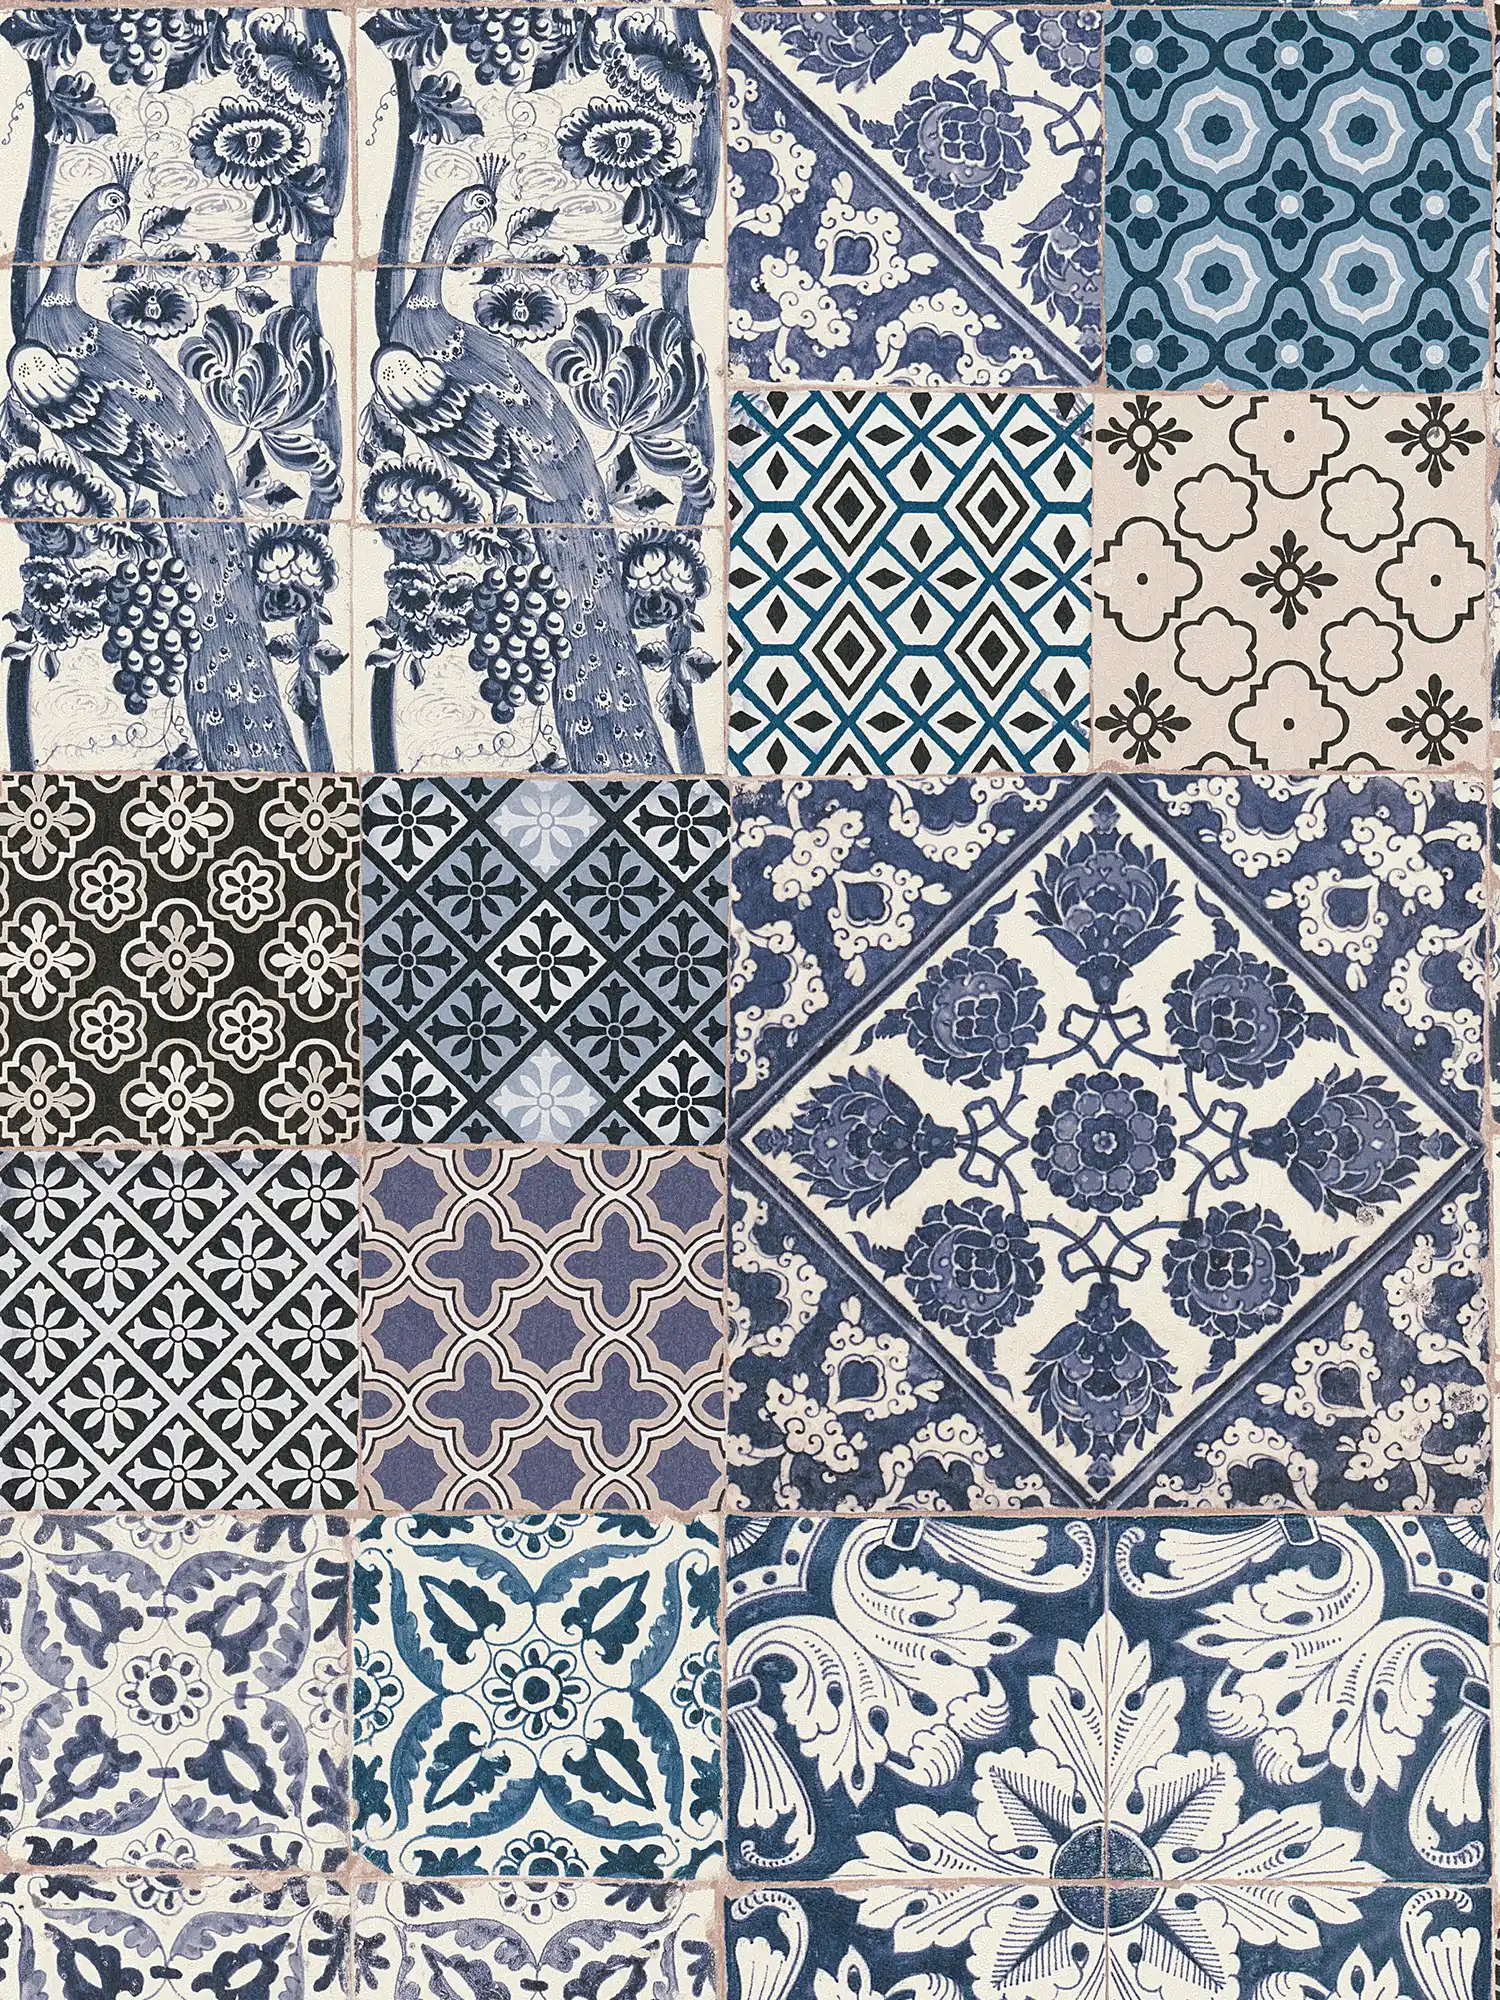             Wallpaper in tile & mosaic design - blue, cream, white
        